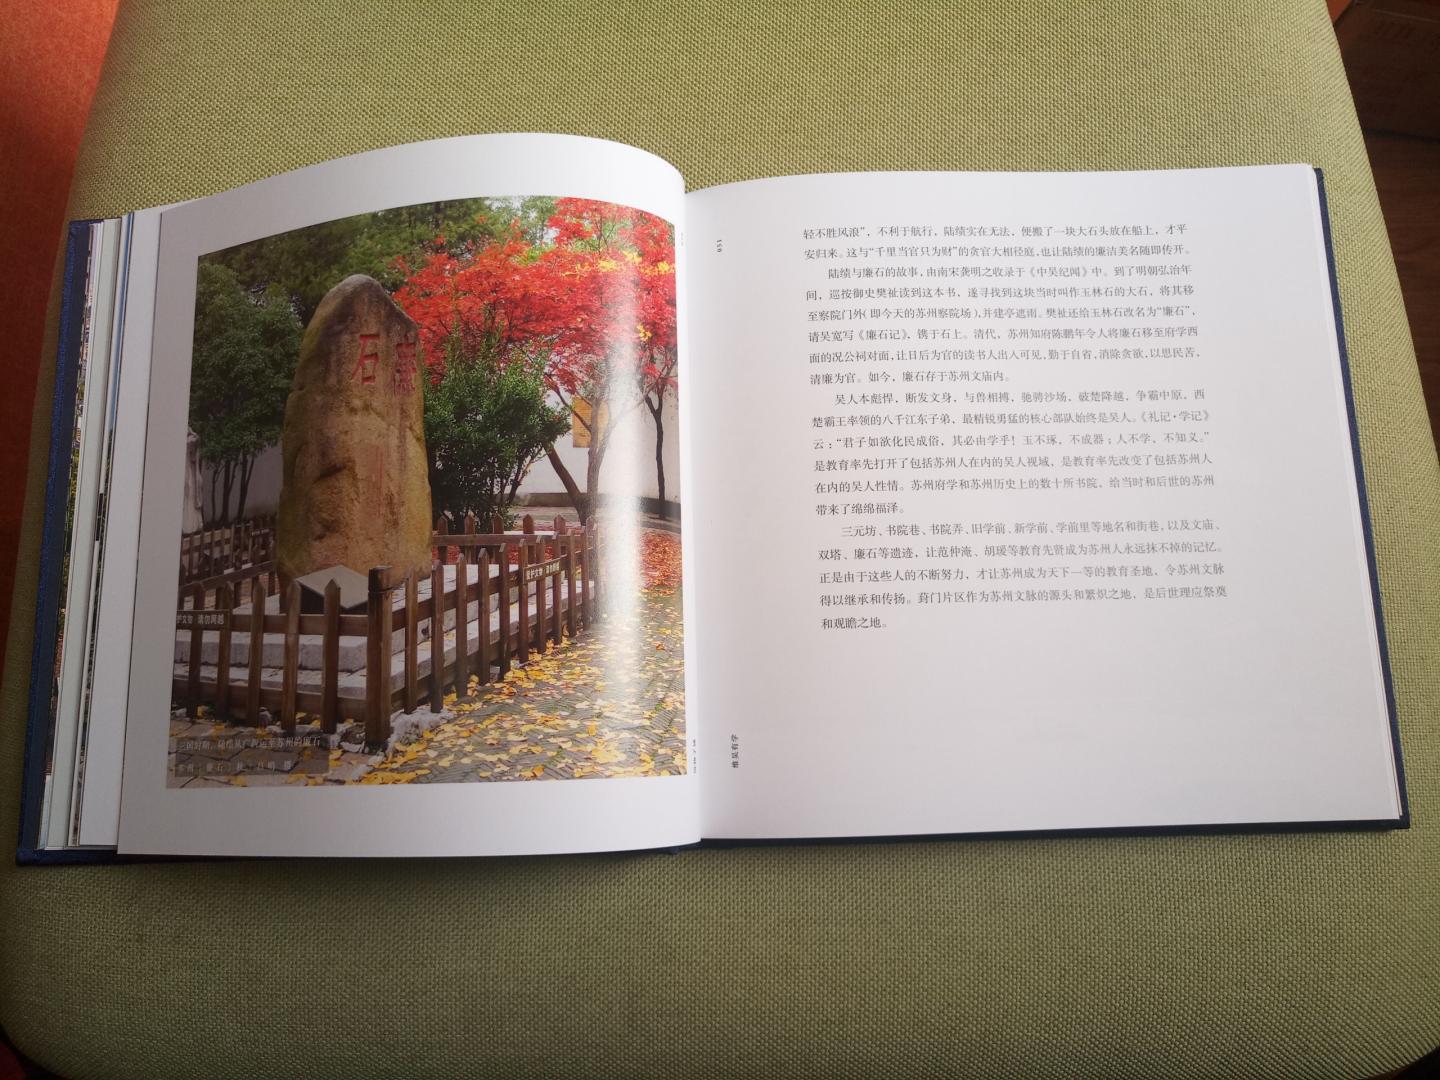 这是一本讲苏州葑门区域人文、历史、风物的书，装帧很漂亮，大腰封、全布面、铜版纸全彩印刷，照片也都很漂亮。